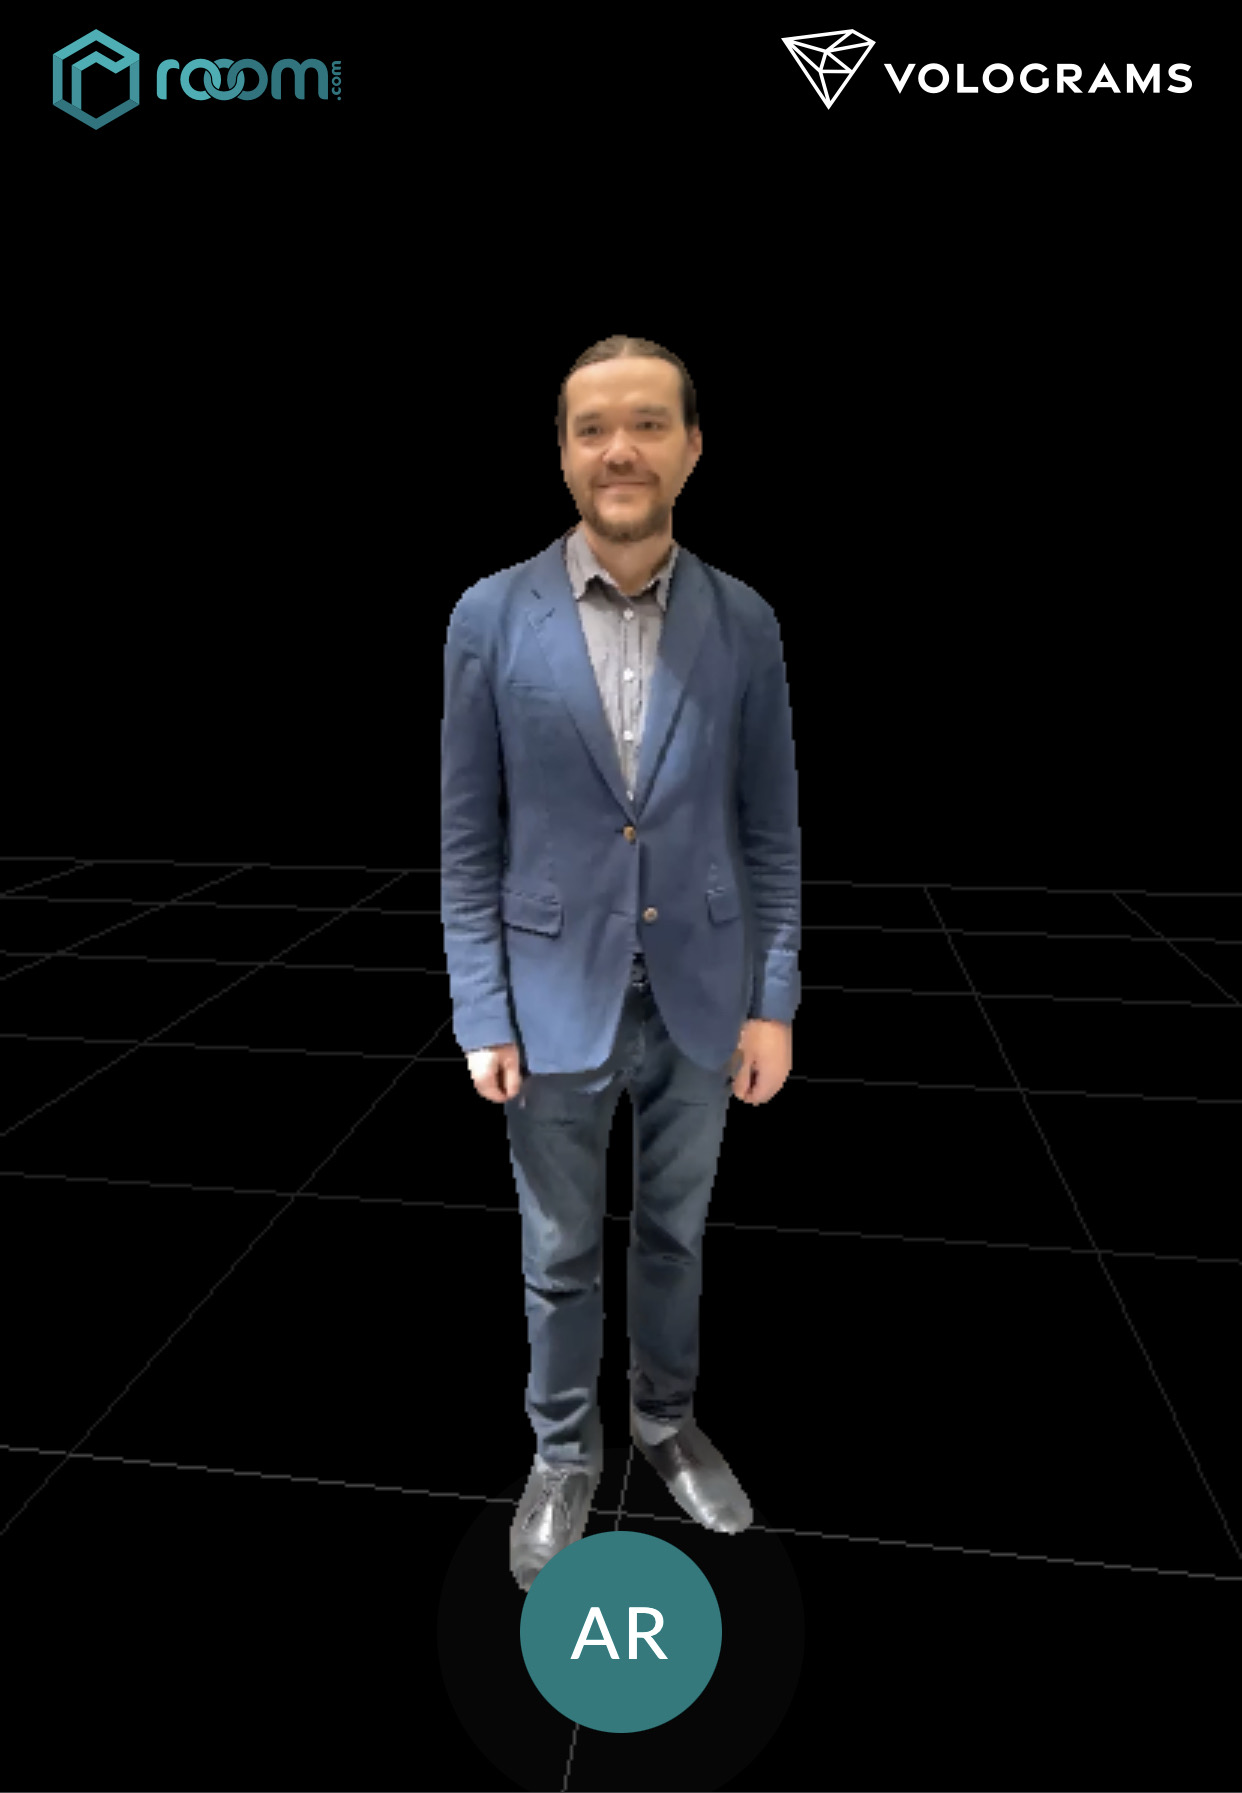 Avatar of a man in an virtual environment